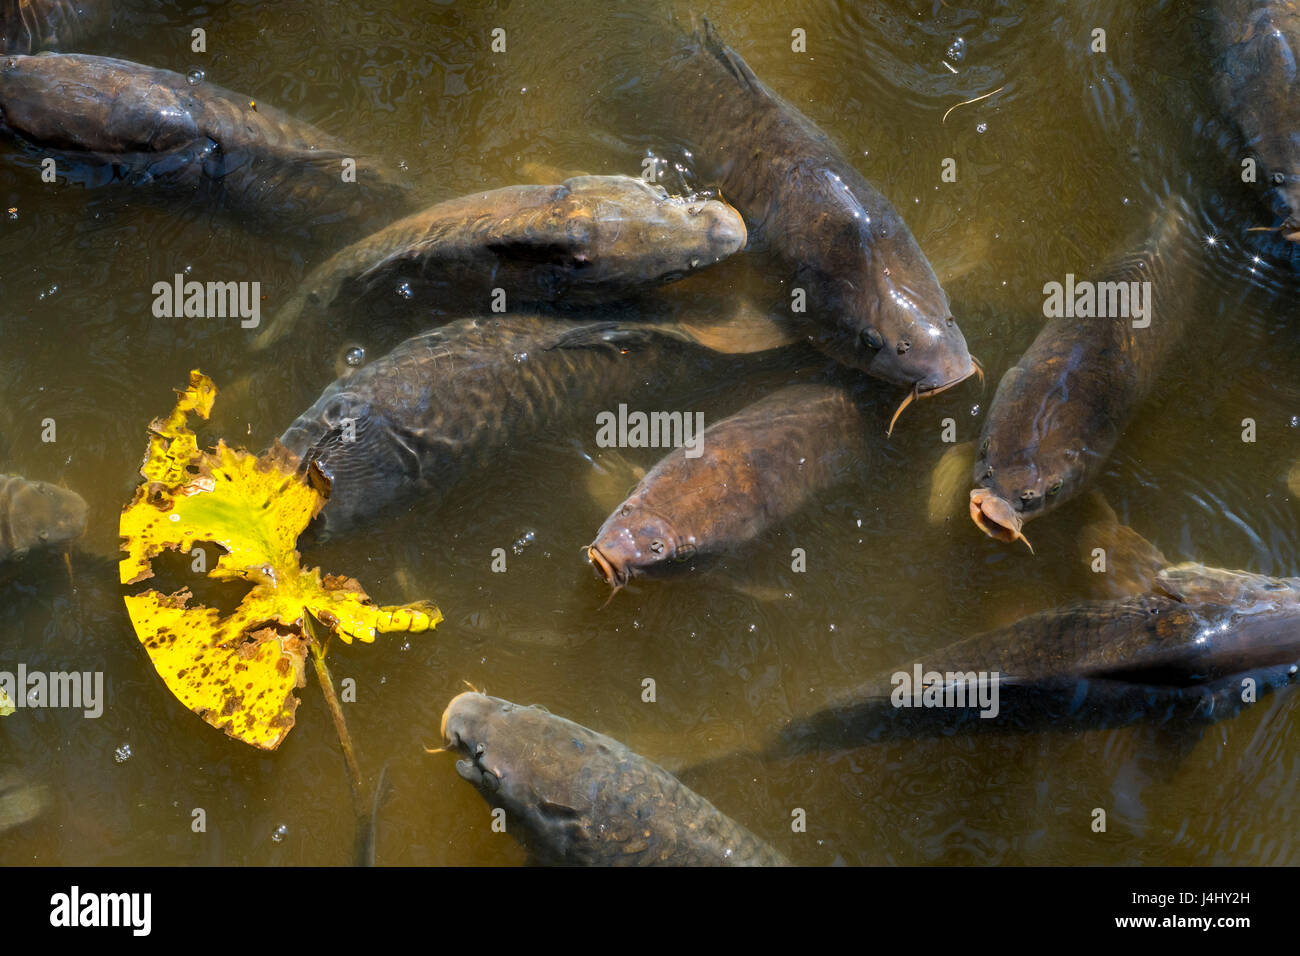 Cardumen de carpas (Cyprinus carpio) aflora con la boca abierta grande de aire en el estanque Foto de stock